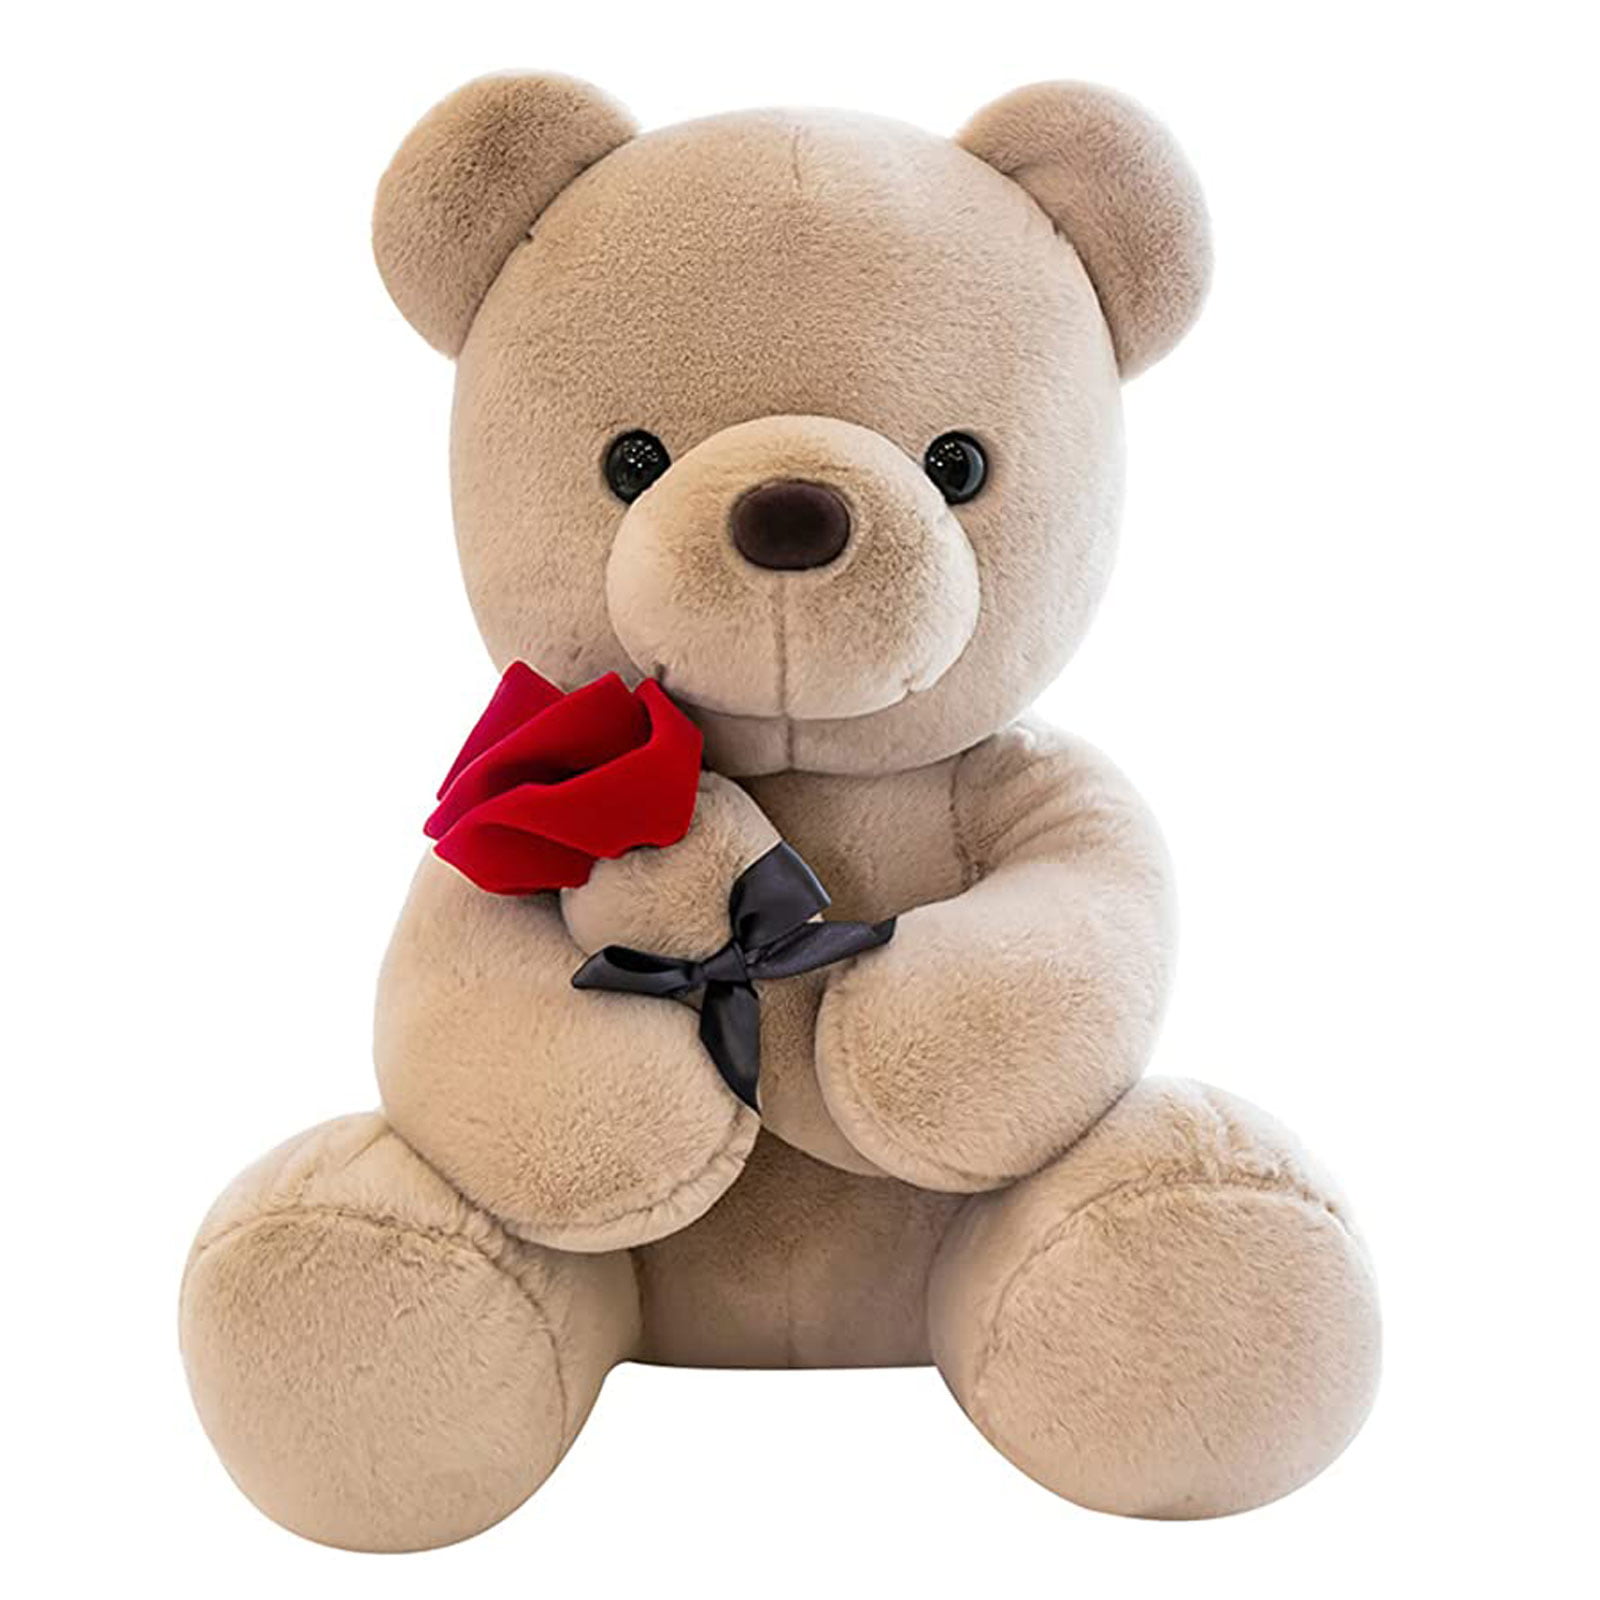 Gift Present Birthday Valentine Teddy Bear Cute Cuddly I LOVE GEORGE NEW 